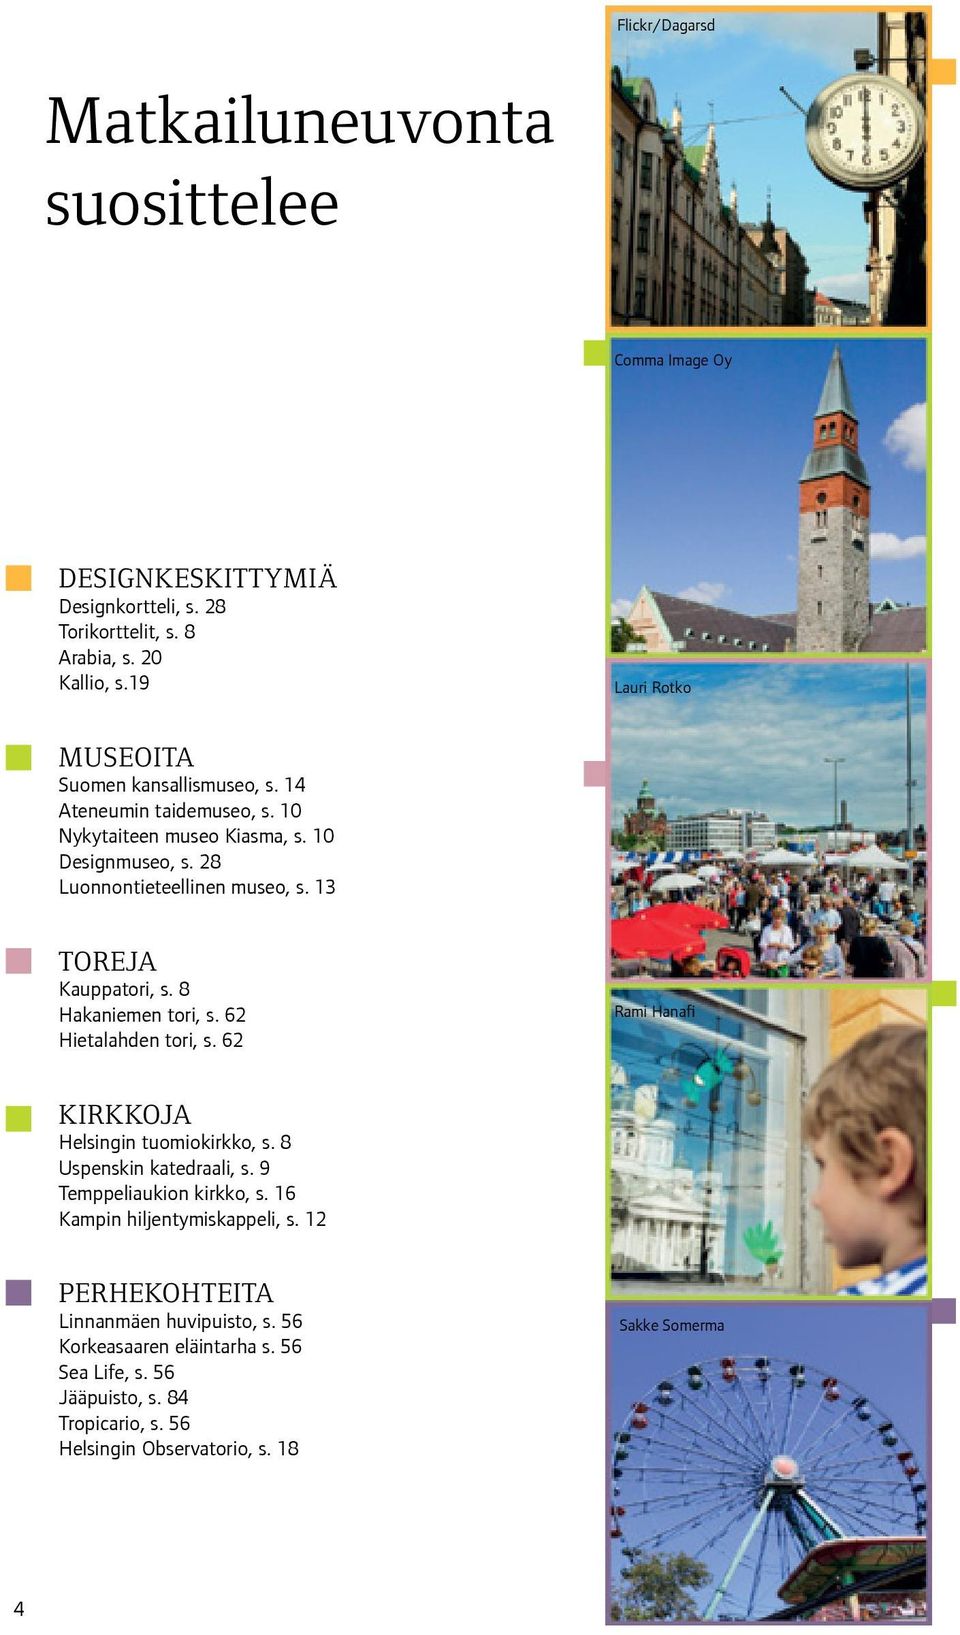 13 TOREJA Kauppatori, s. 8 Hakaniemen tori, s. 62 Hietalahden tori, s. 62 Rami Hanafi KIRKKOJA Helsingin tuomiokirkko, s. 8 Uspenskin katedraali, s.